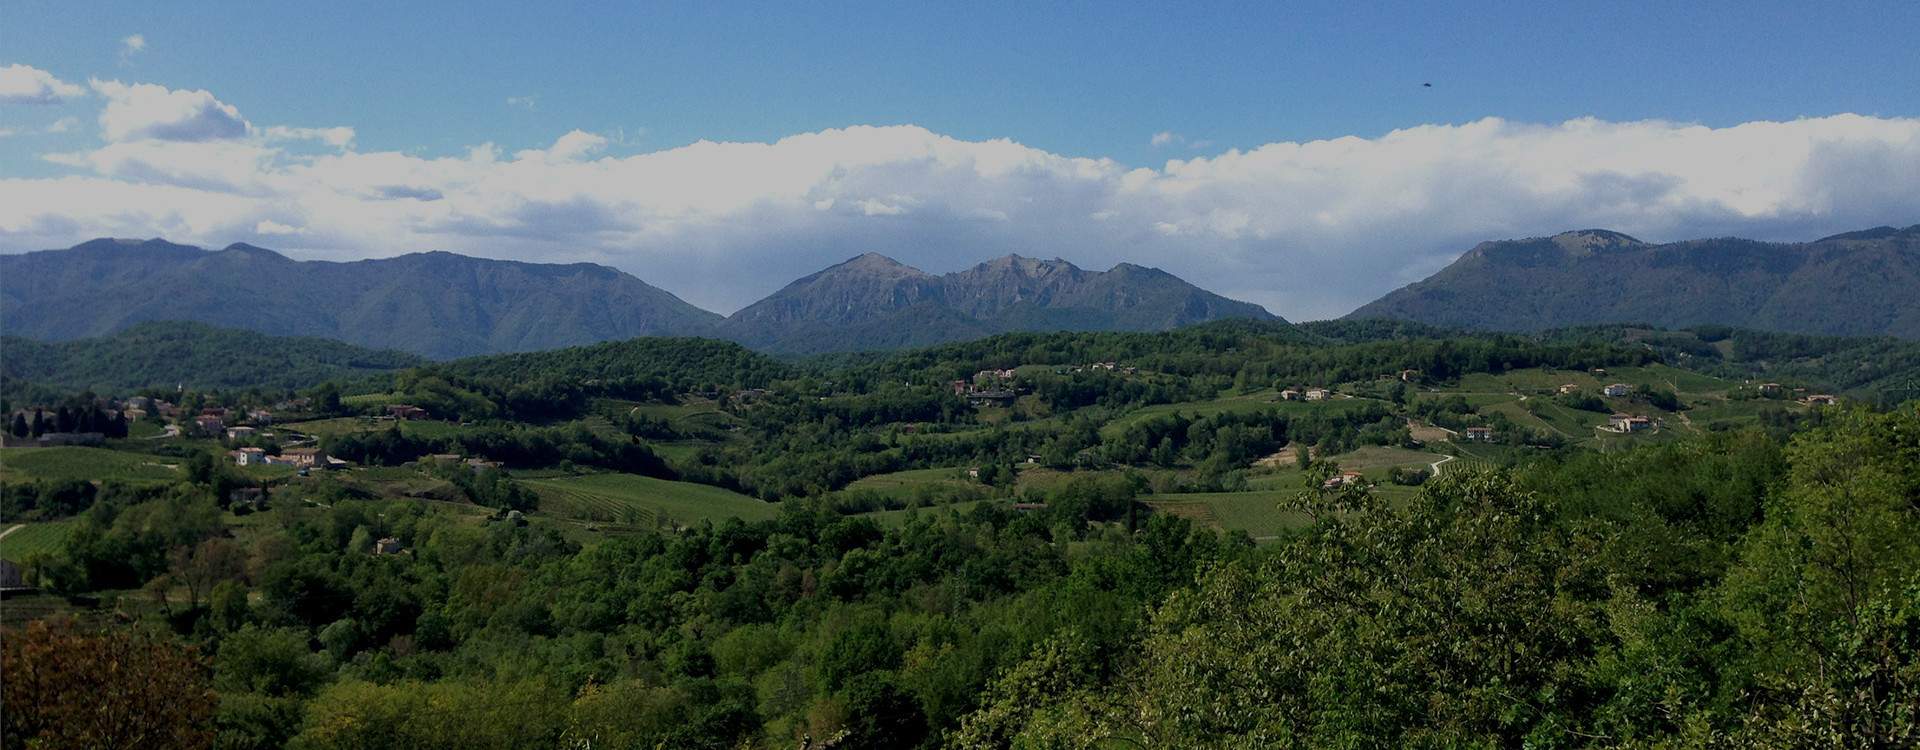 Prealpi Cansiglio Hiking Primavera